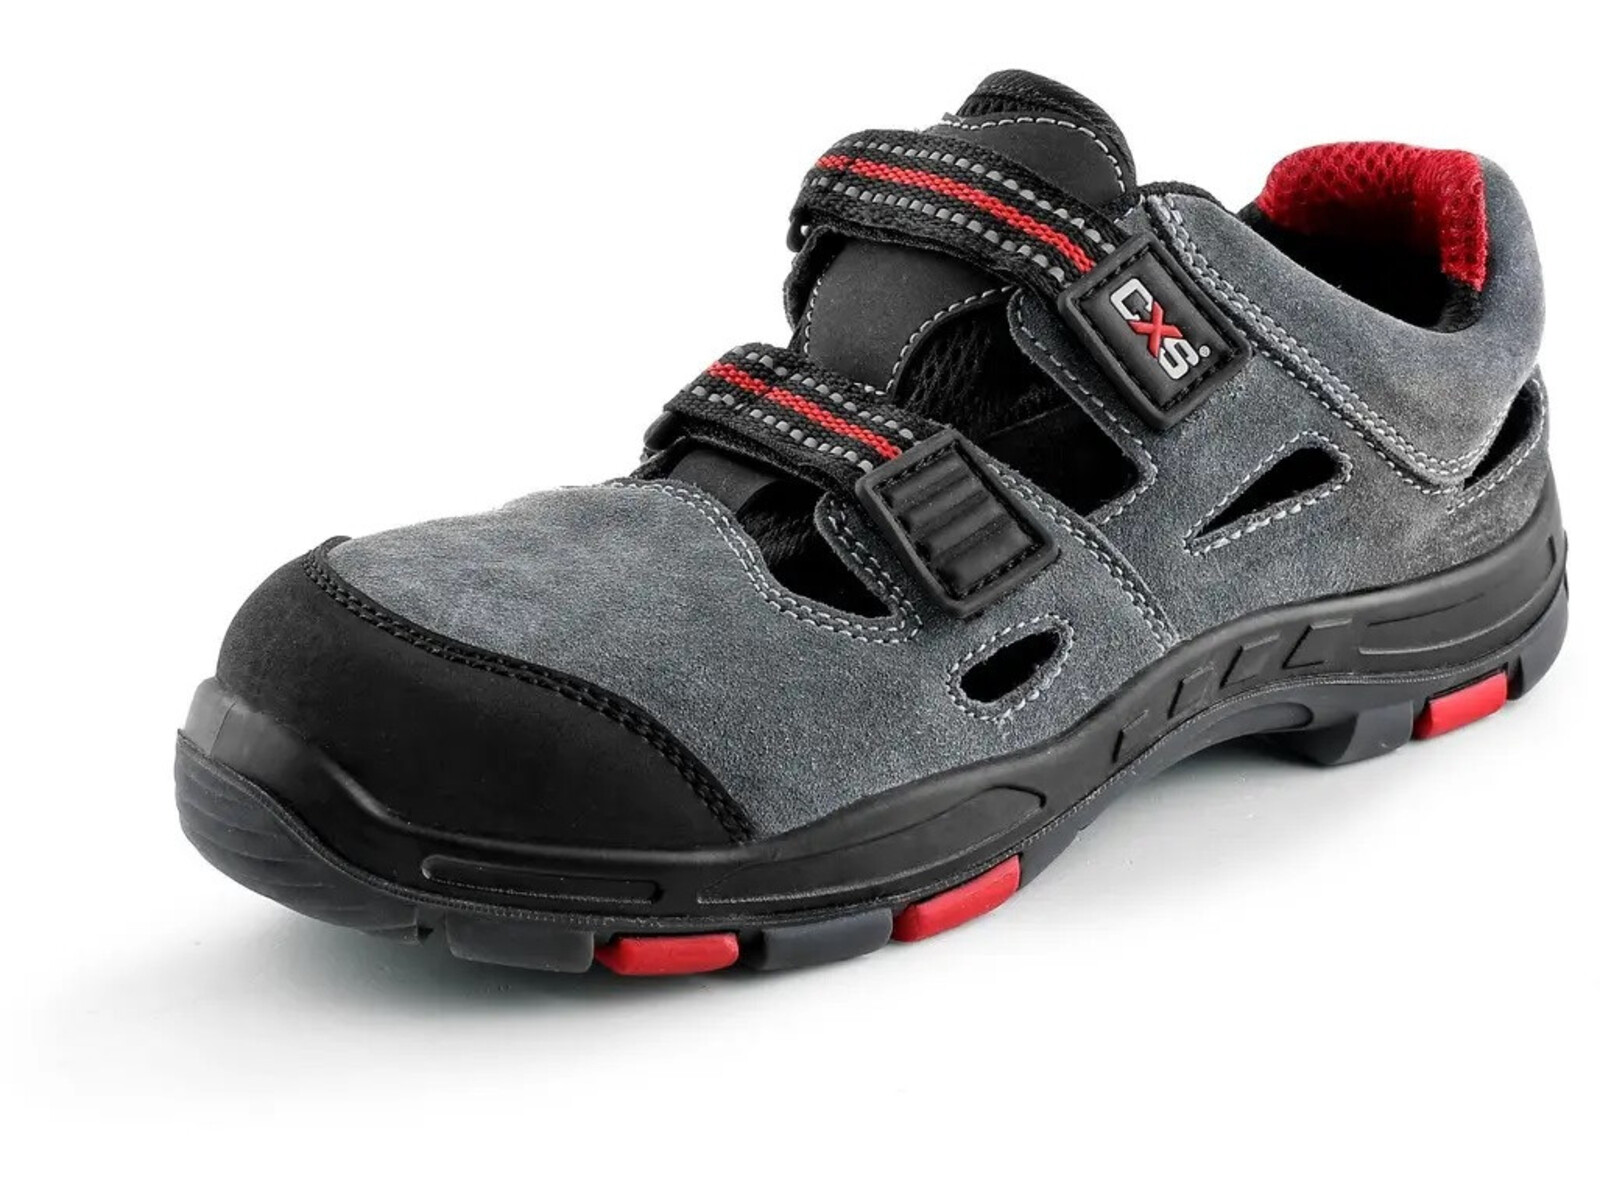 Pracovné sandále CXS Rock Phyllite O1 FO HRO SRA MF - veľkosť: 44, farba: sivá/červená